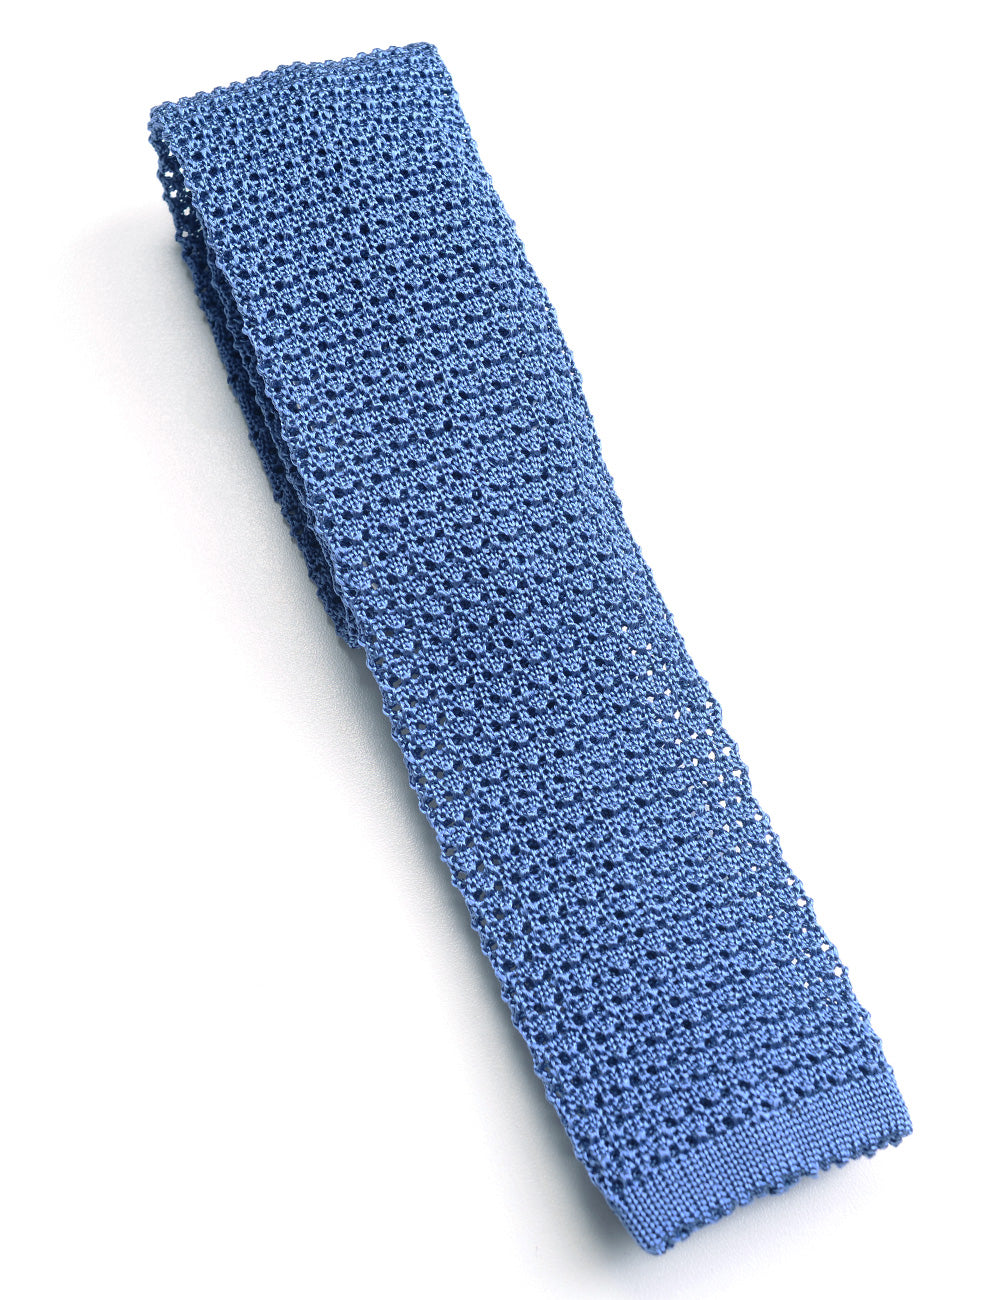 Detail showing knit of Italian Silk Knit Tie - Blue Poppy